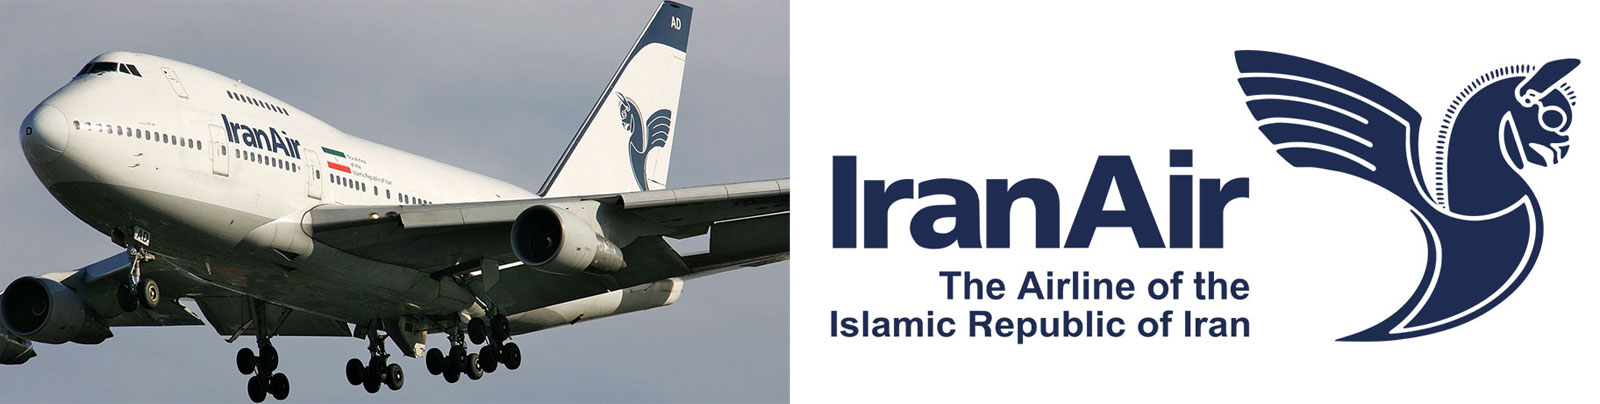 شرکت هواپیمایی ایران ایر - شرکت هواپیمایی هما